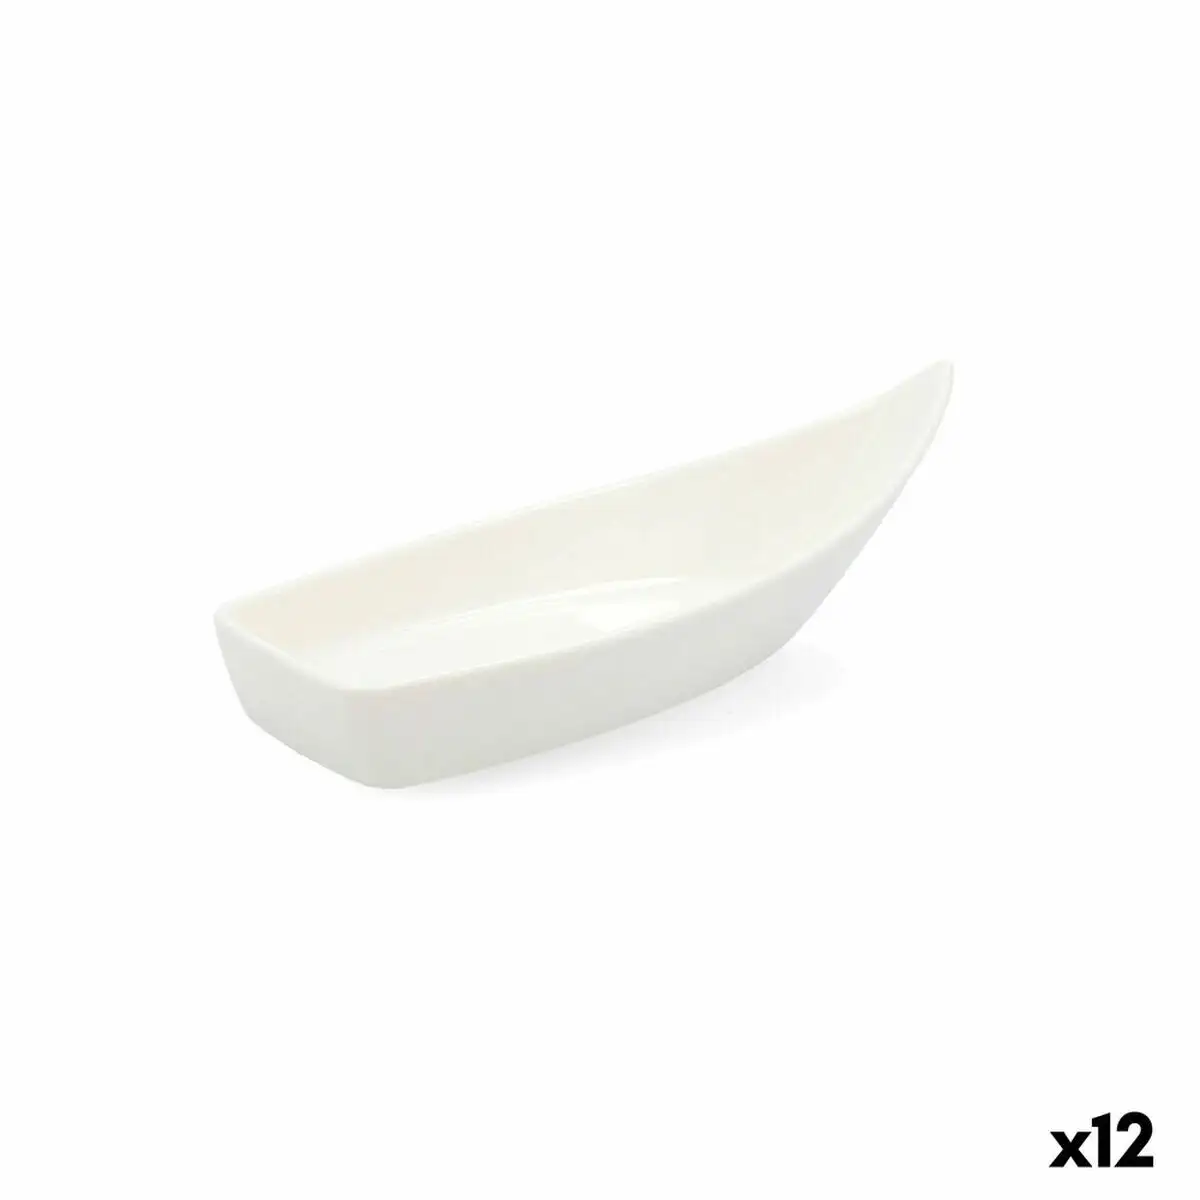 Bol quid select ceramique blanc 12 unites pack 12x _6225. DIAYTAR SENEGAL - L'Art de Choisir, l'Art de S'émerveiller. Explorez notre gamme de produits et laissez-vous émerveiller par des créations authentiques et des designs modernes.